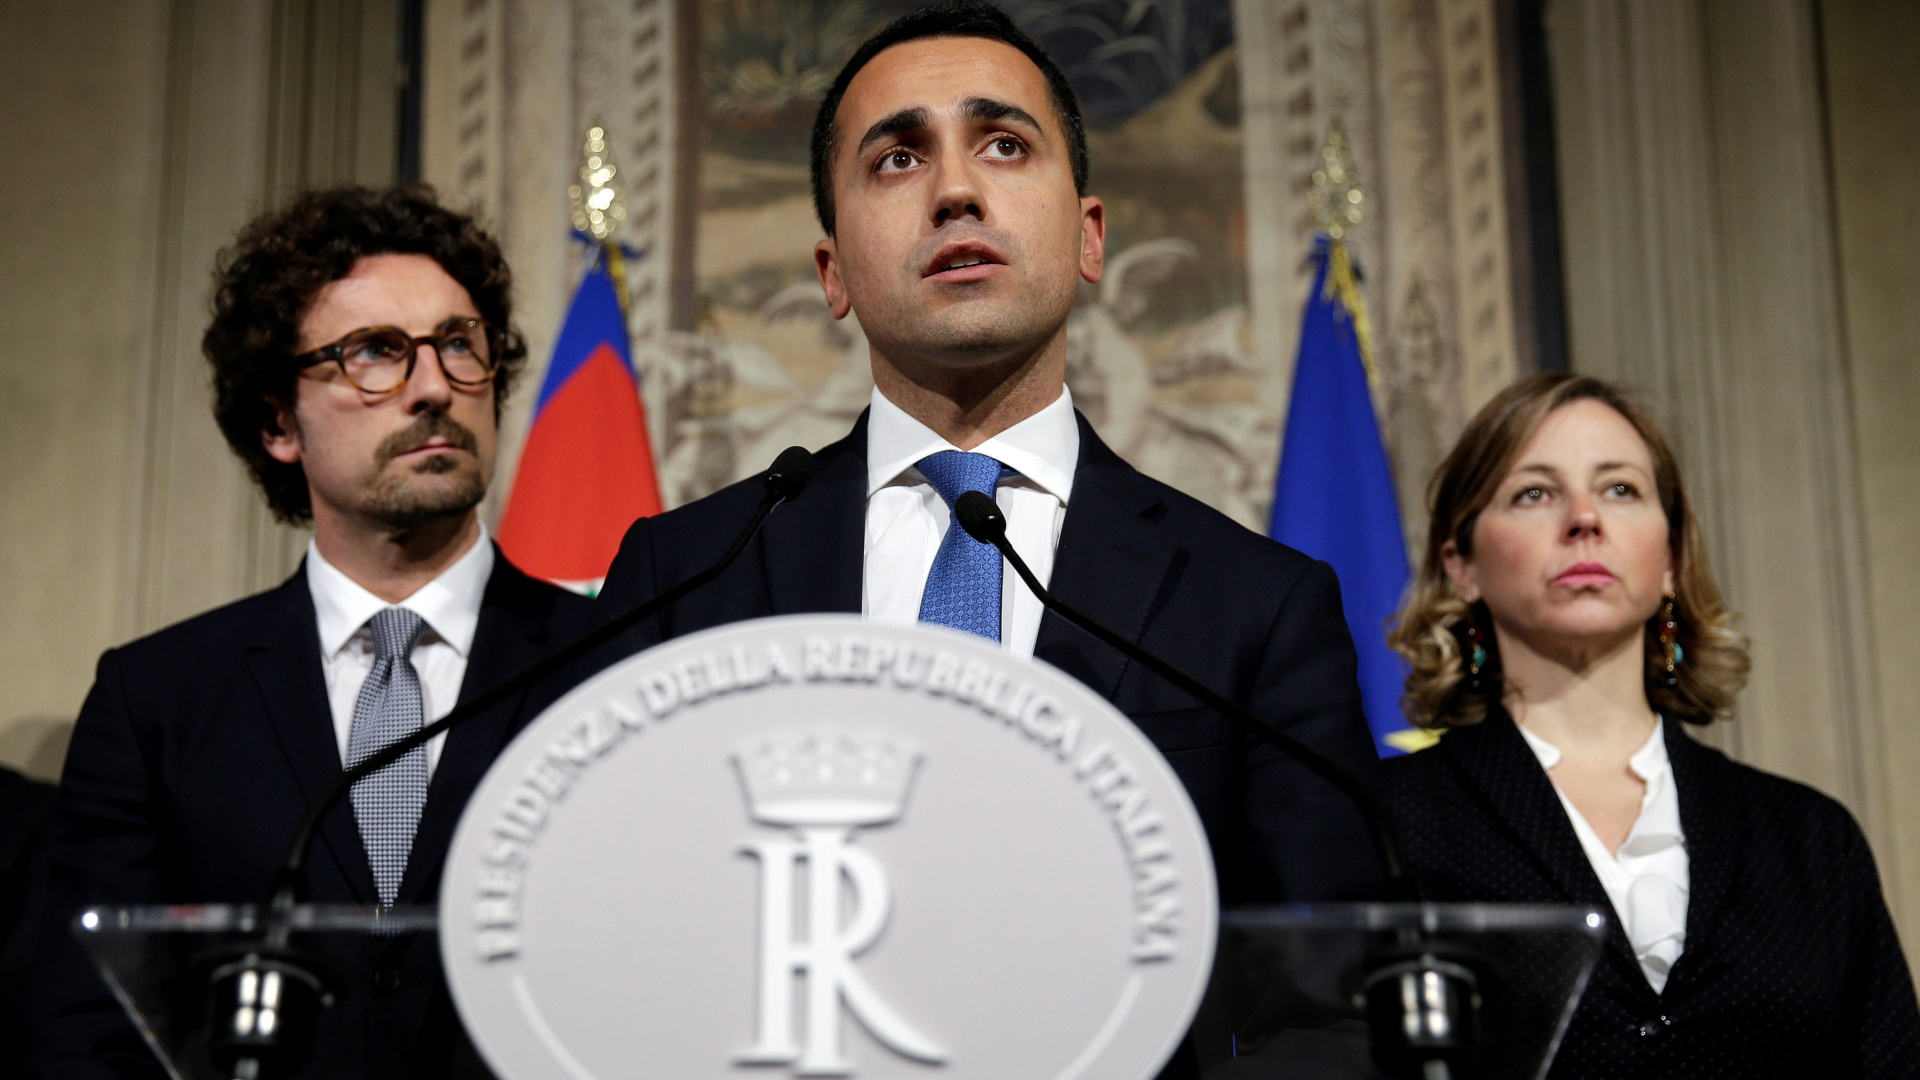 Regierungsbildung in Italien: Fünf Sterne und Lega Nord vor Koalition